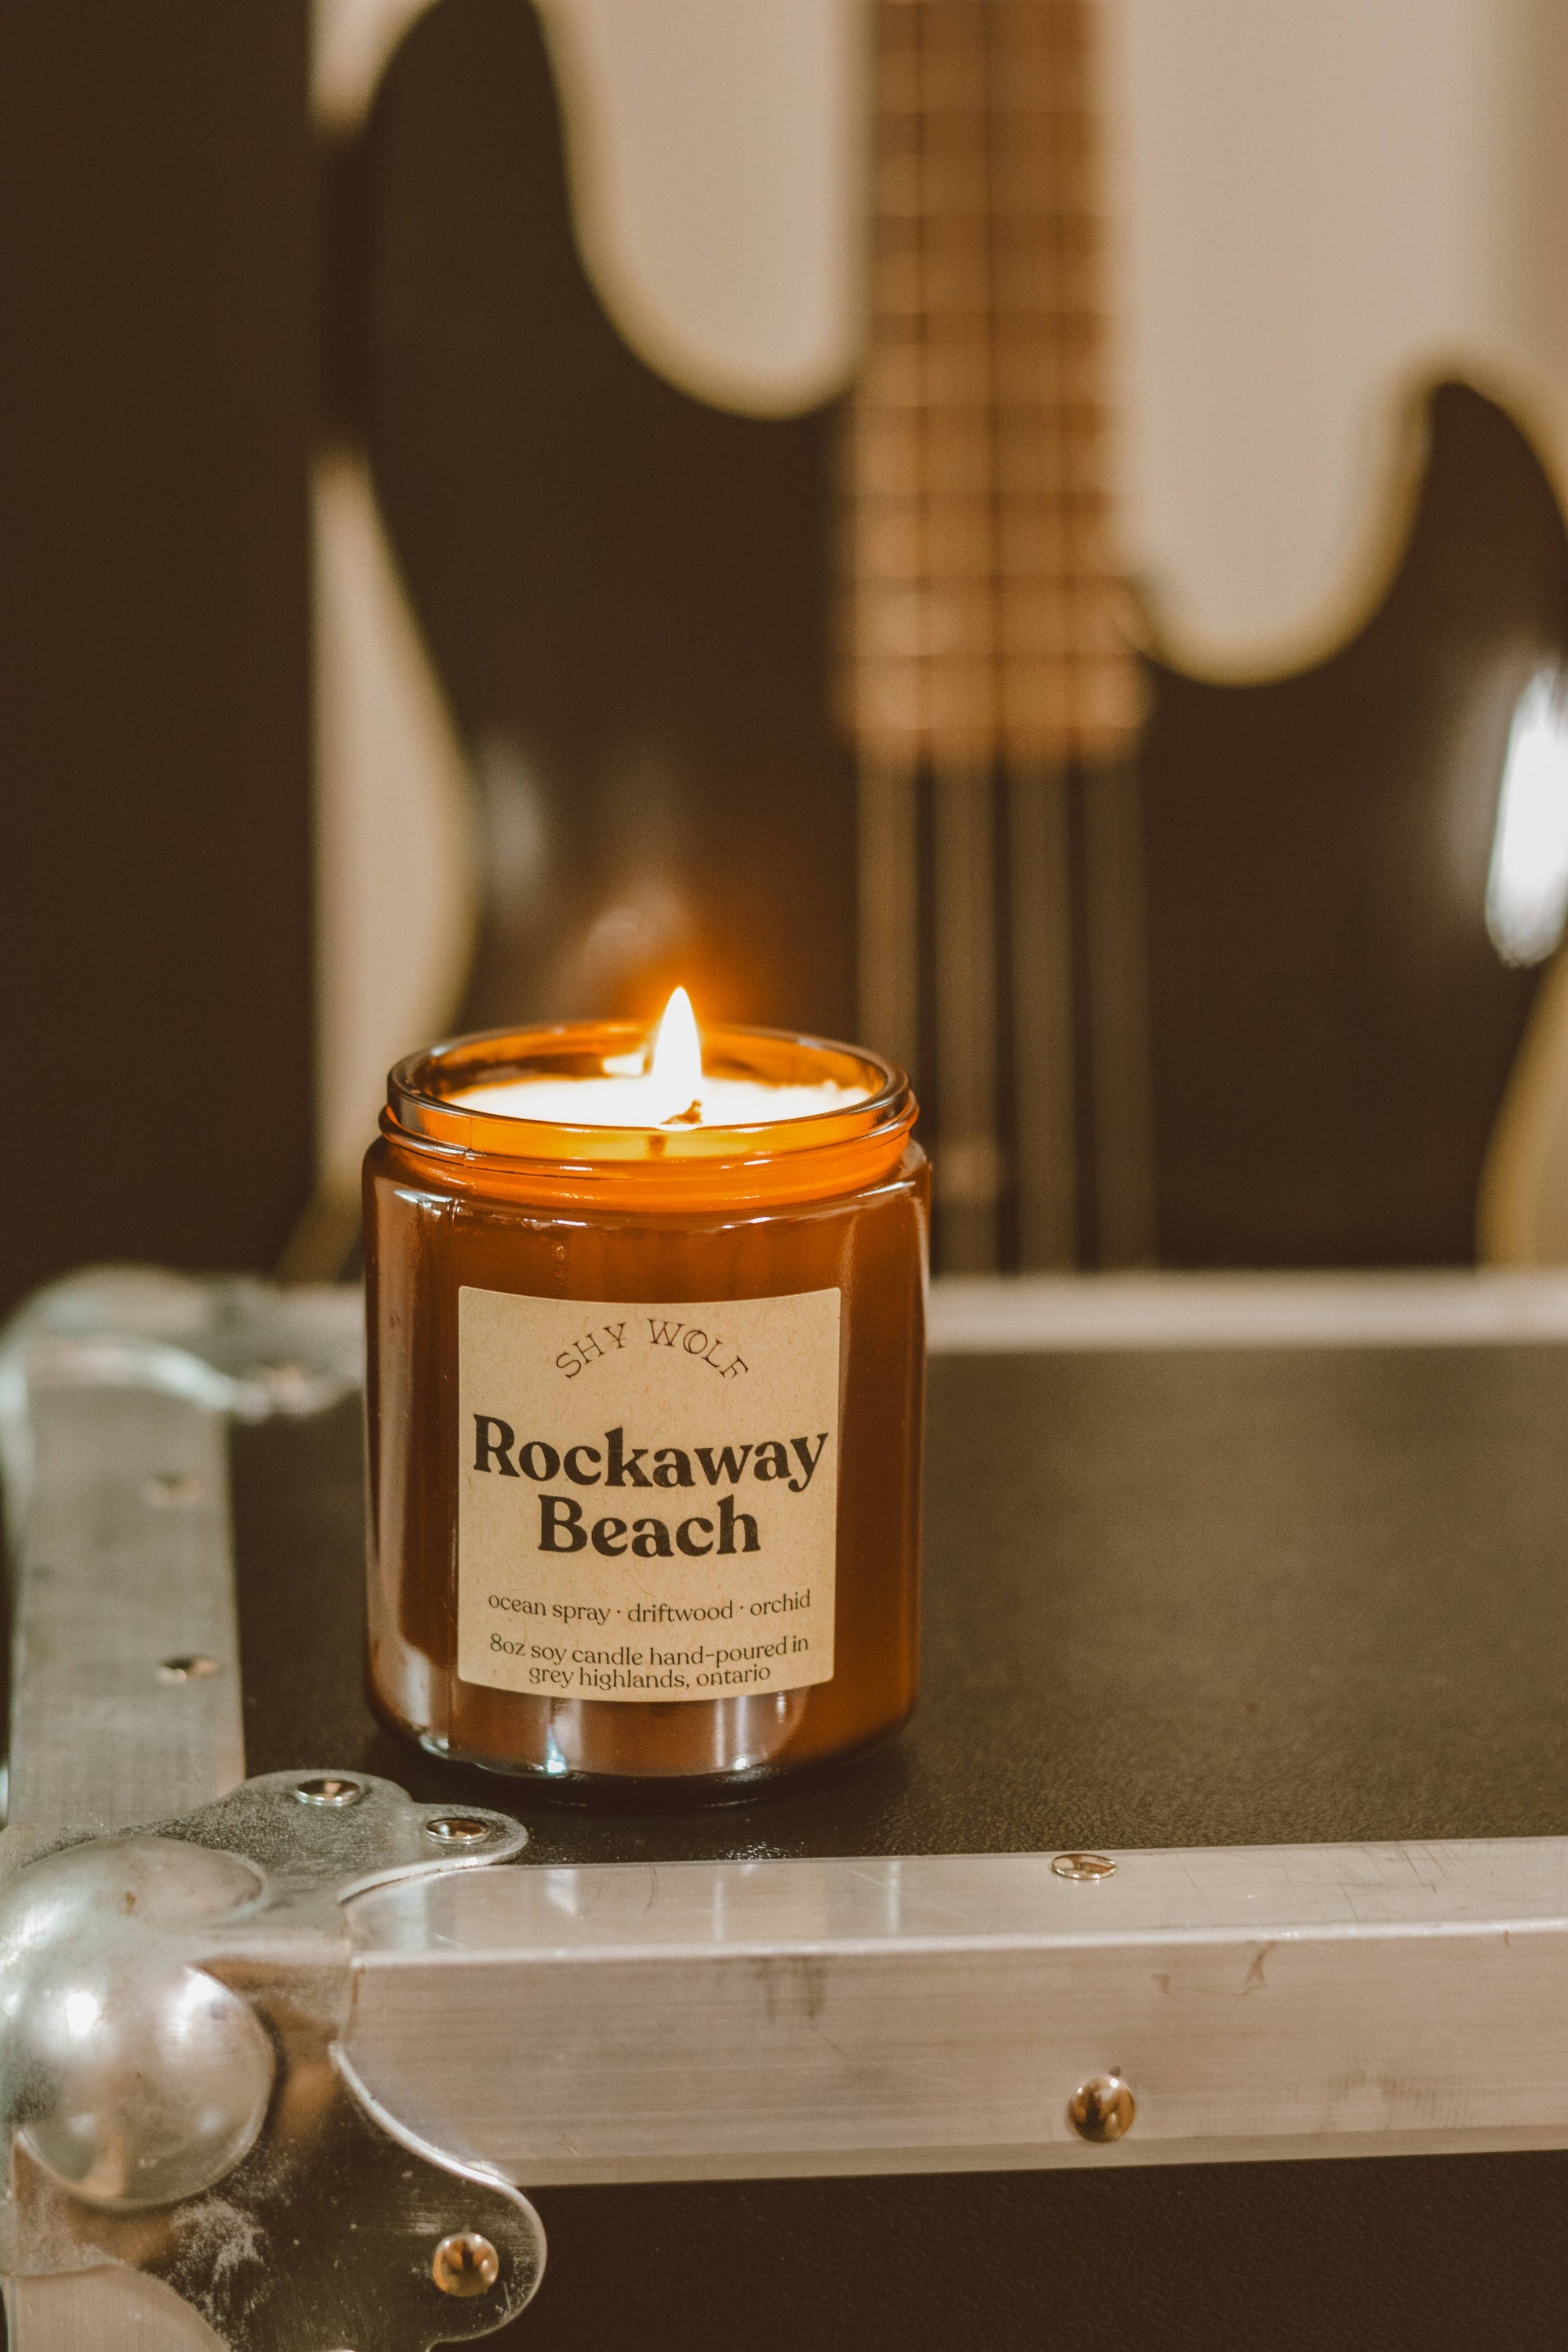 Rockaway Beach Soy Candle